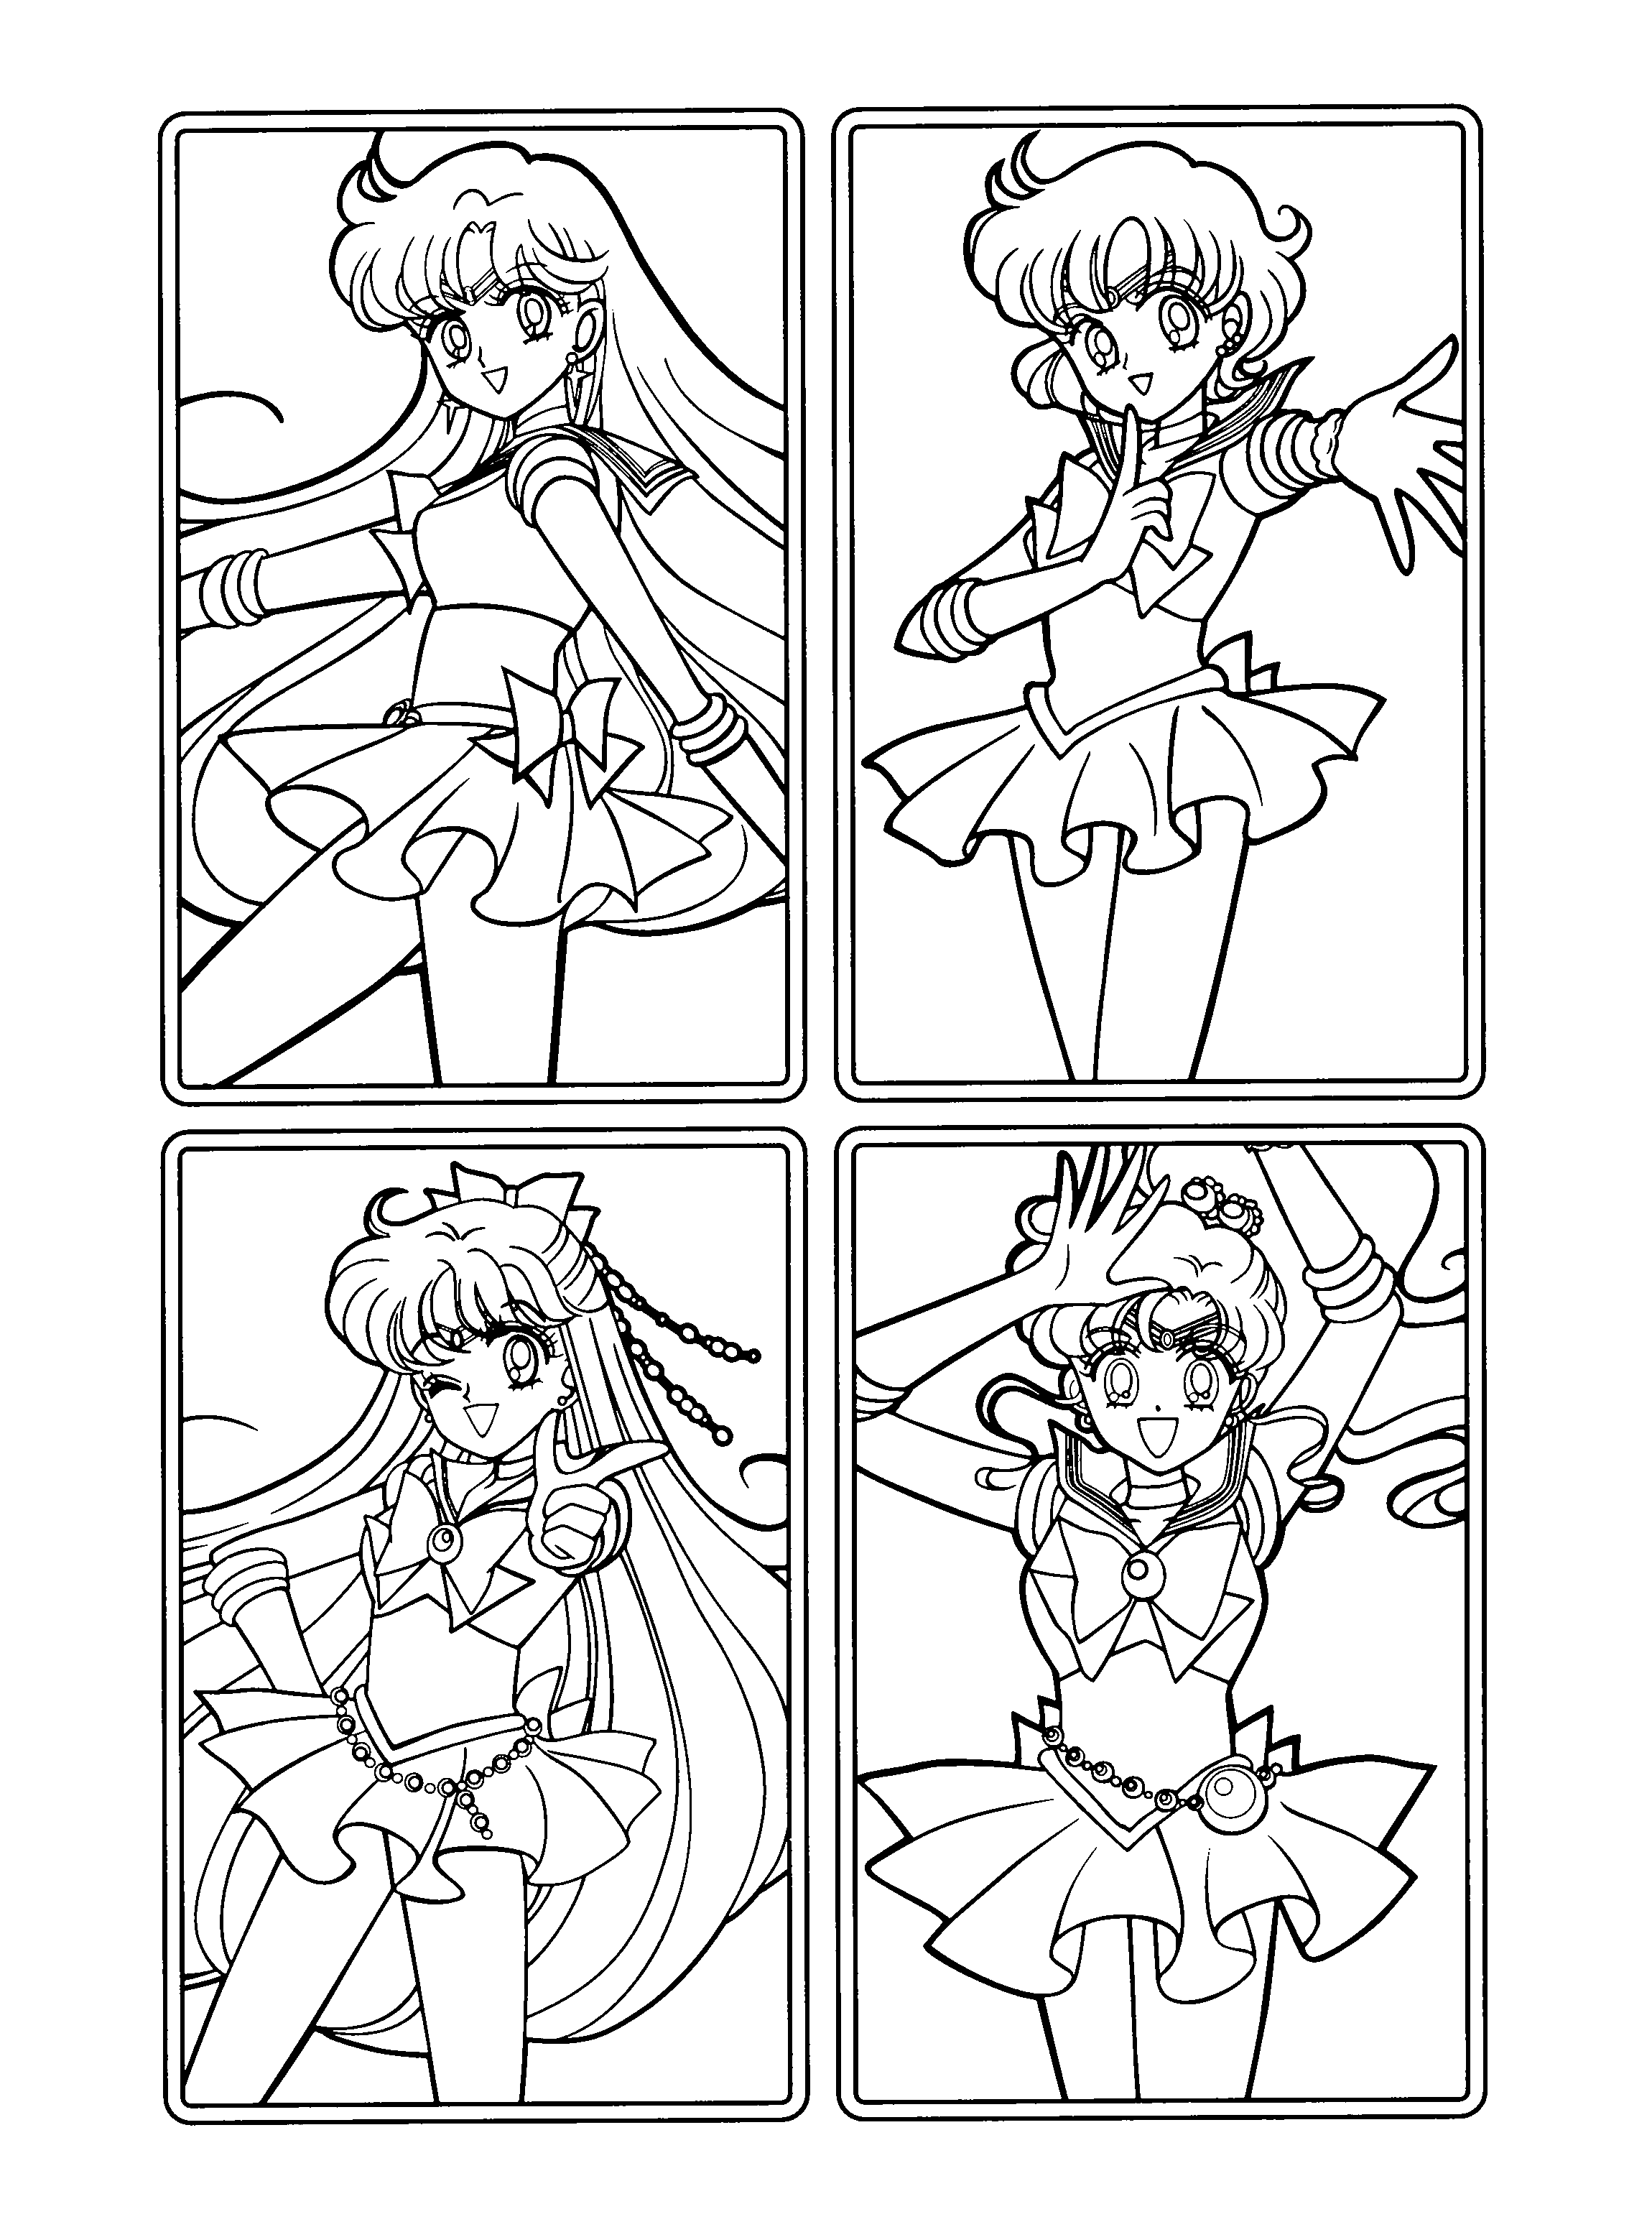 Sailormoon ausmalbilder